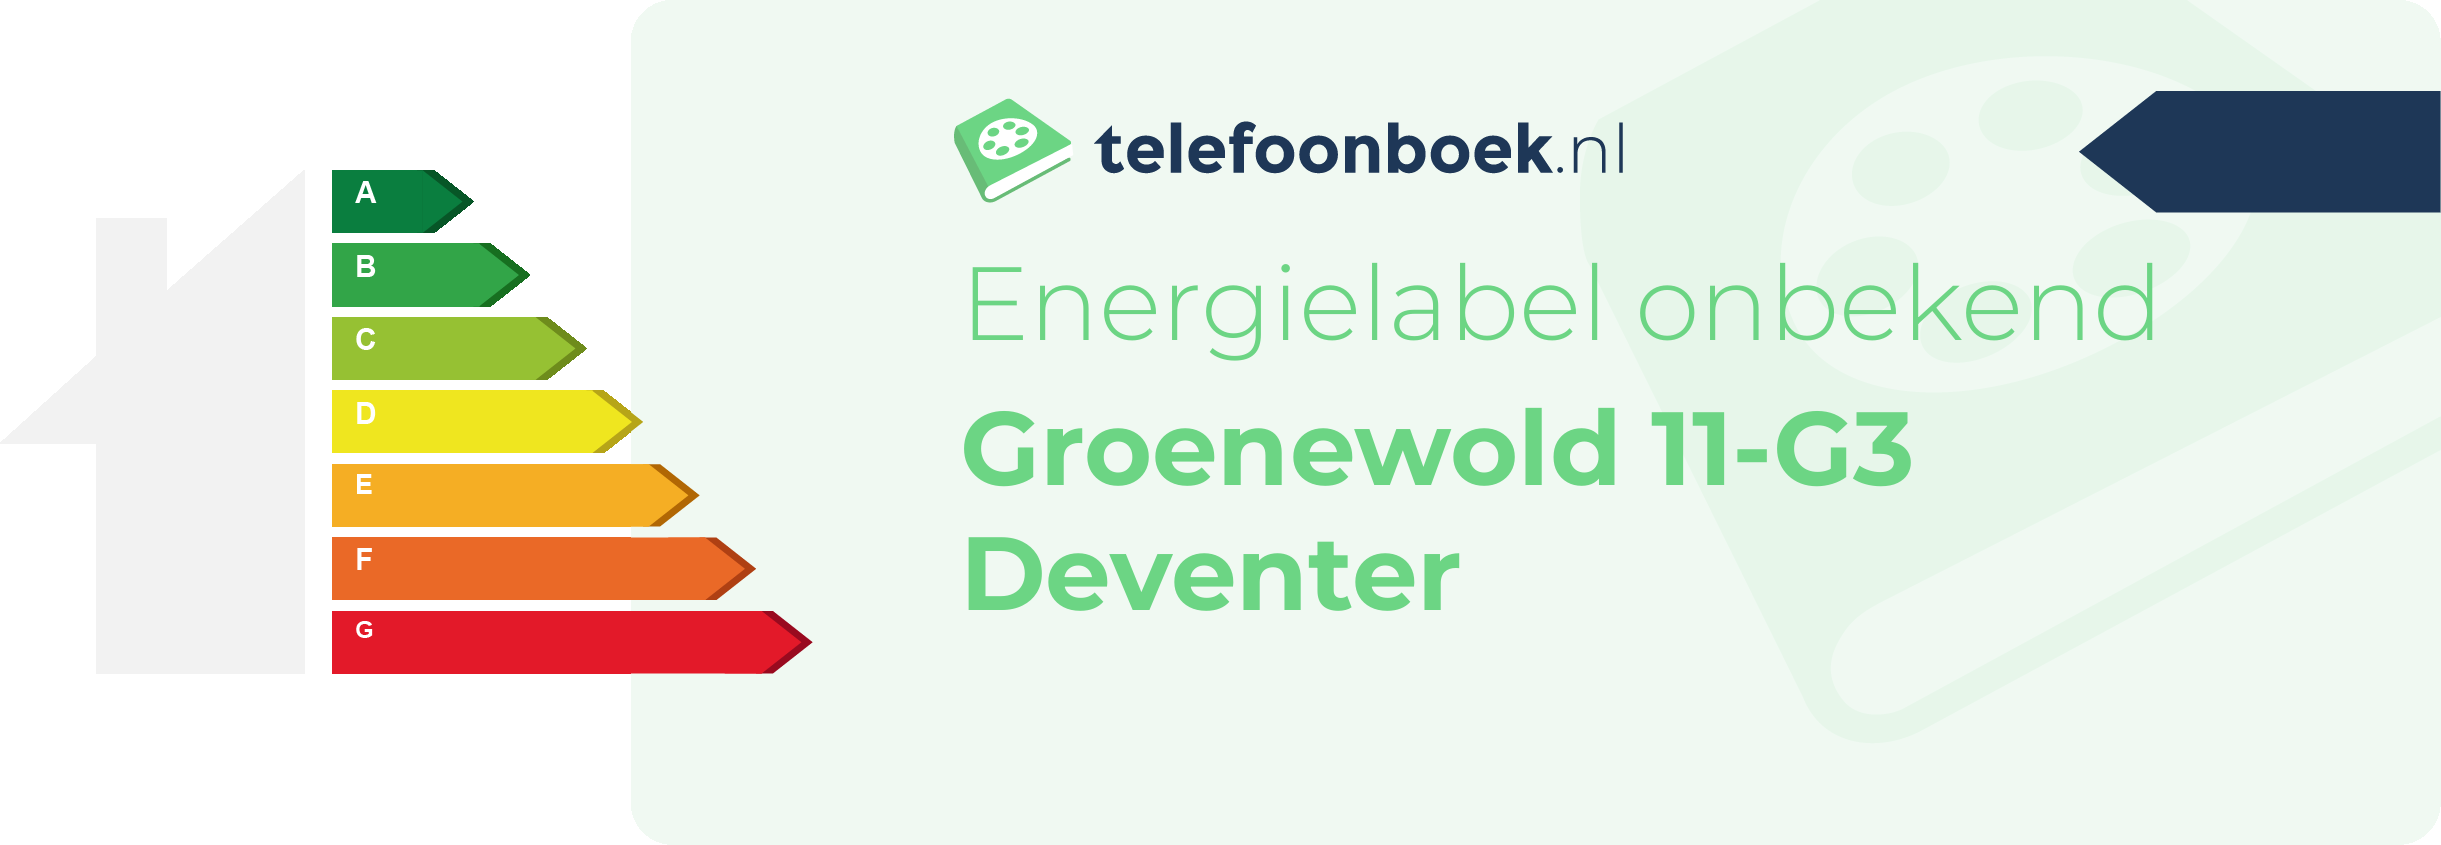 Energielabel Groenewold 11-G3 Deventer